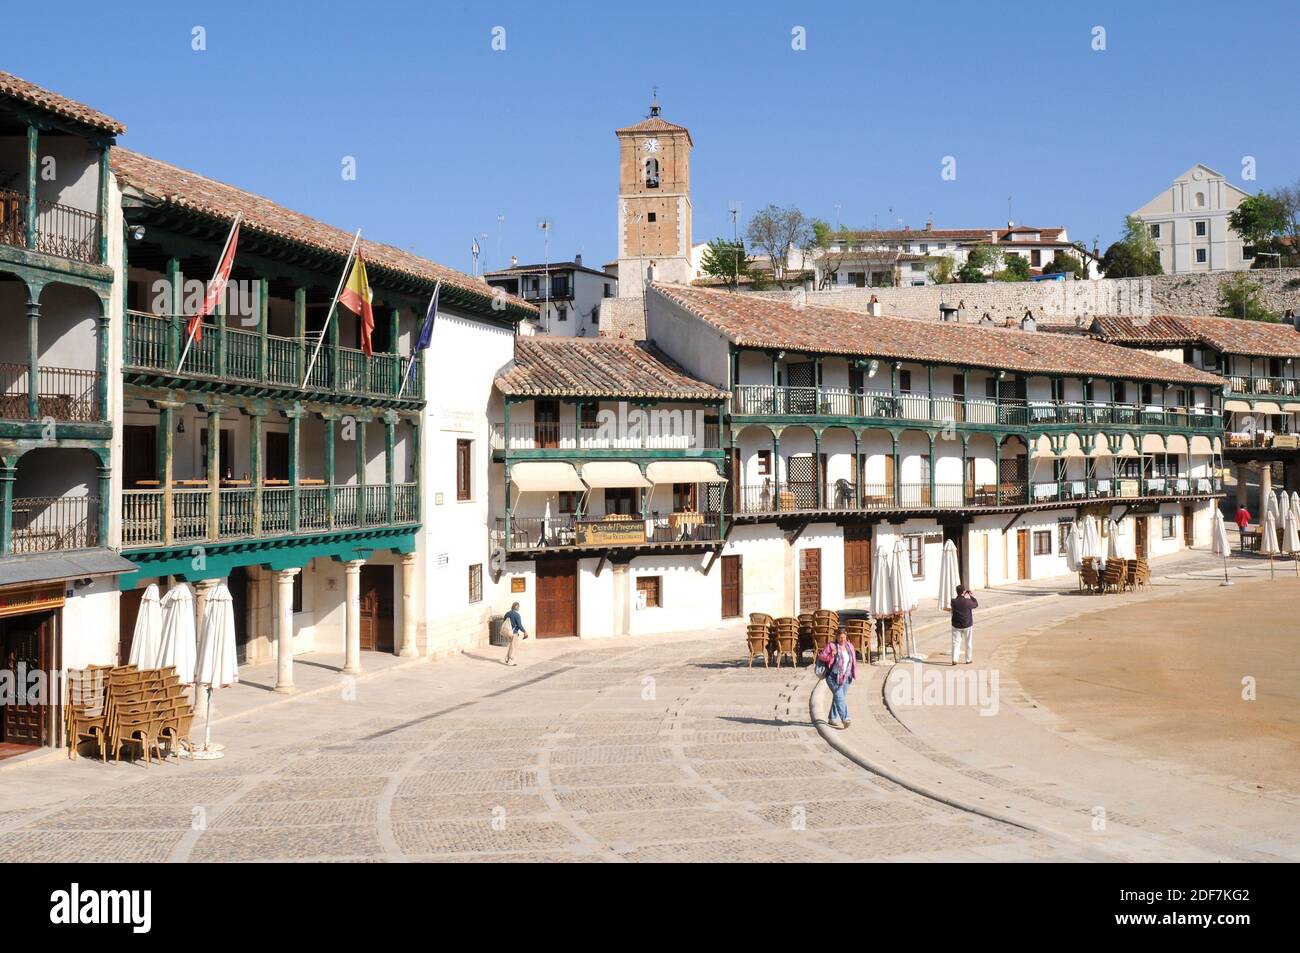 Chinchon, Plaza Mayor (15-17ème siècles) et de gauche à droite Tour de l'horloge et théâtre Lope de Vega. Comunidad de Madrid, Espagne. Banque D'Images